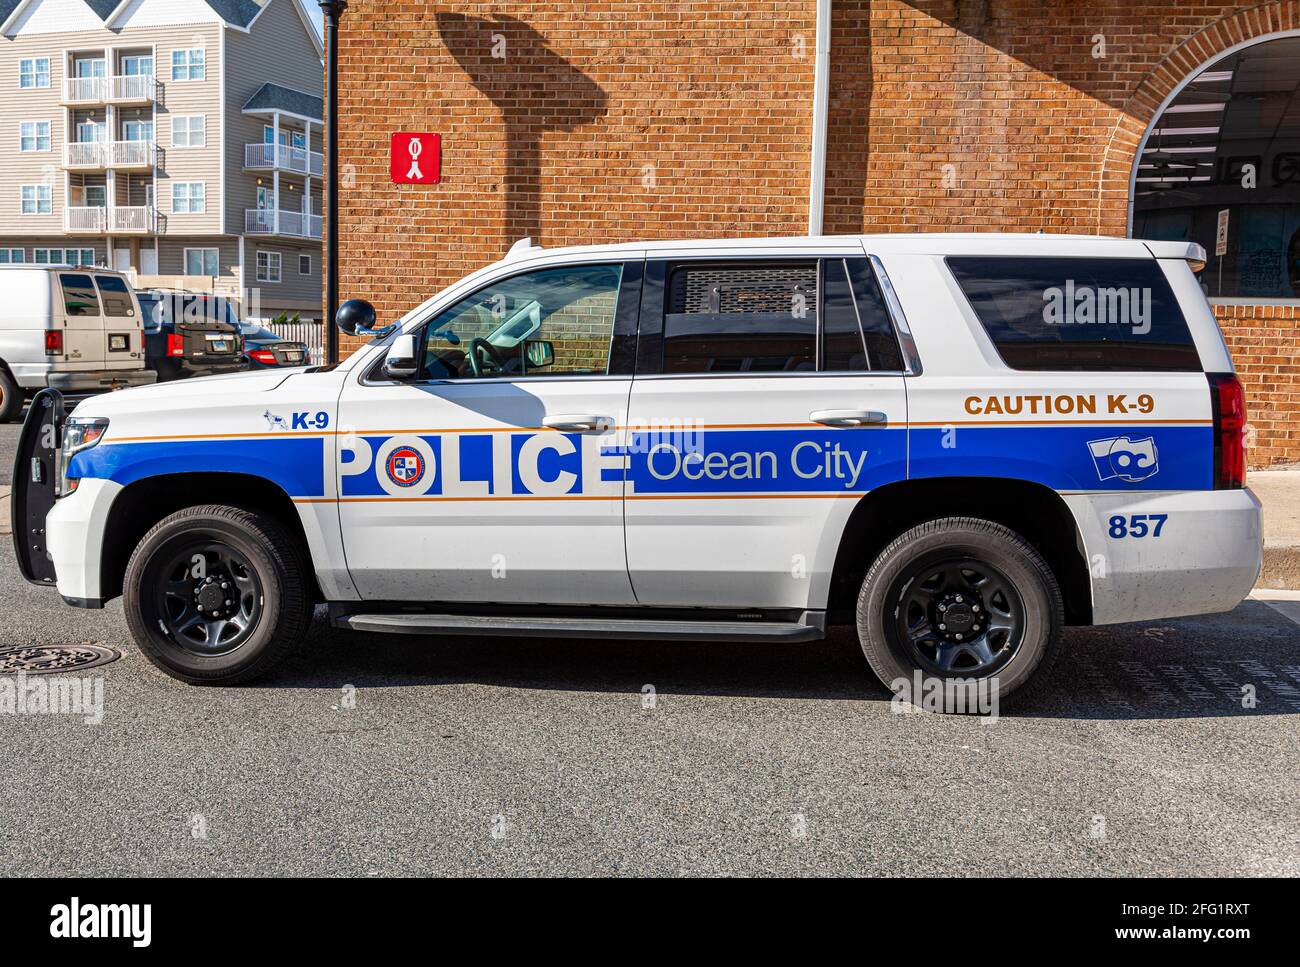 Ocean City, MD, USA 04-18-2021: Un vehículo Ford Explorer Police perteneciente al Departamento de Policía de Ocean City está inactivo cerca de la caminata de la junta. Esto es un K-9 Foto de stock